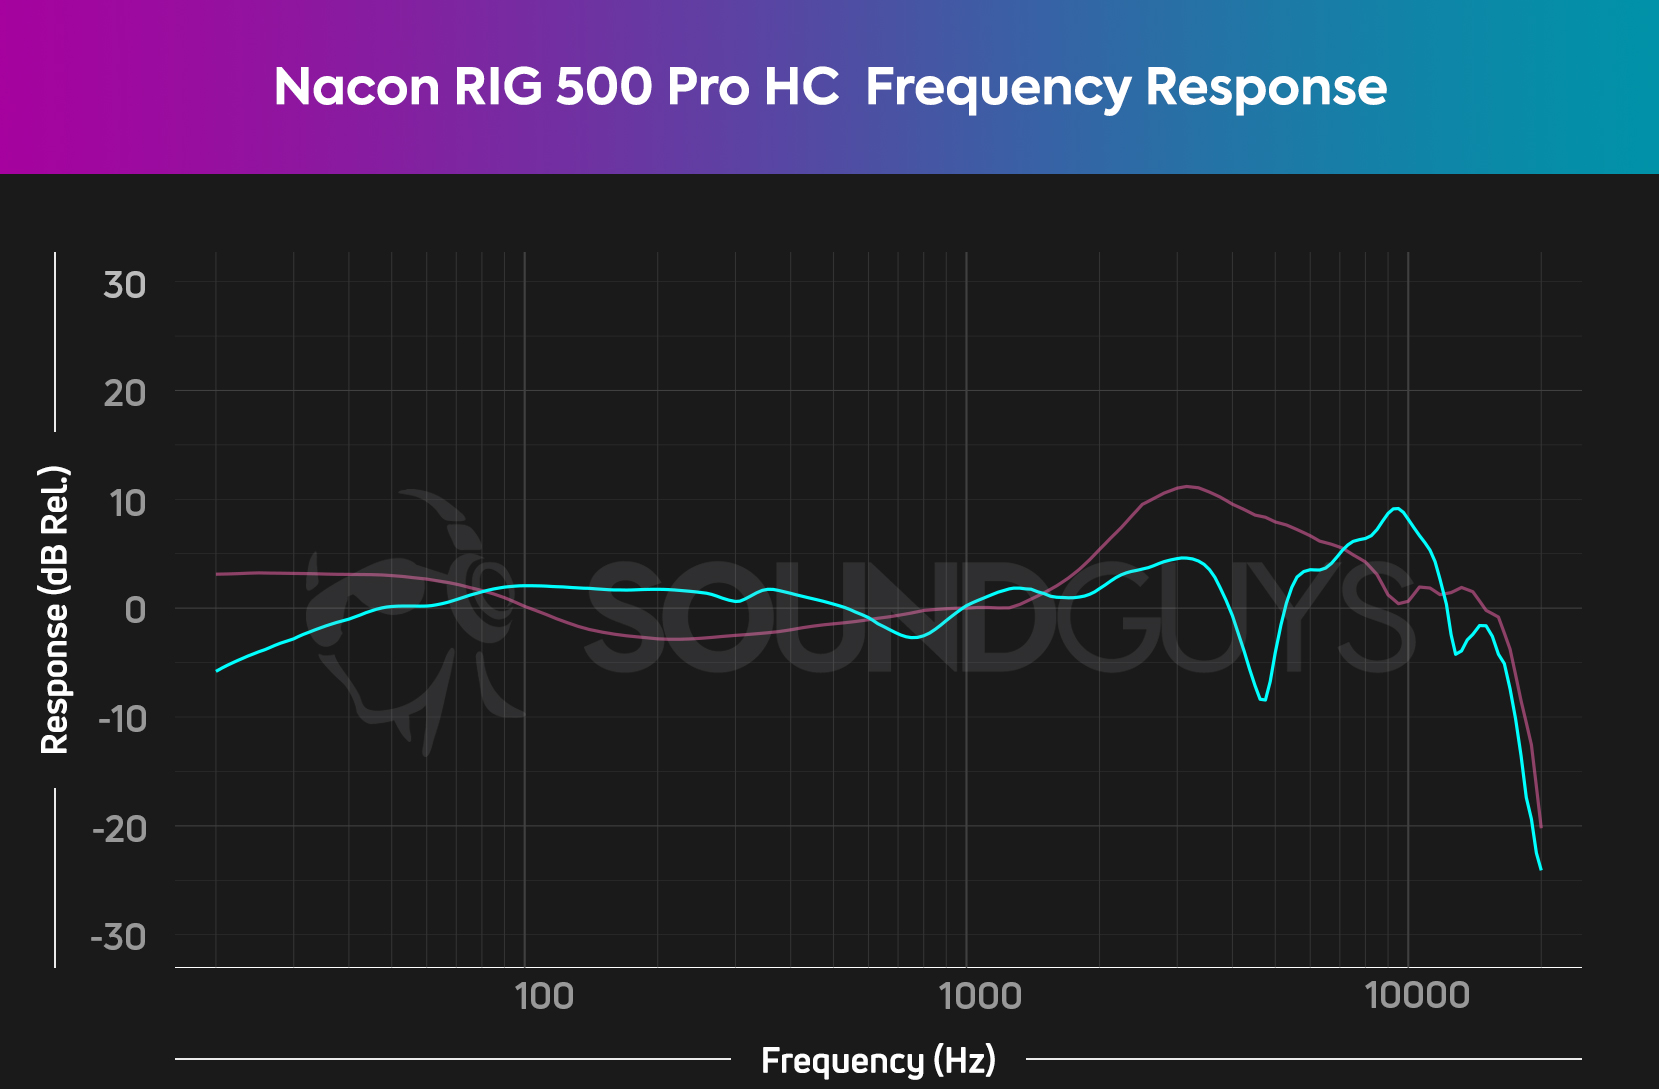 Nacon RIG 500 Pro HC SoundGuys 2 - Gen review